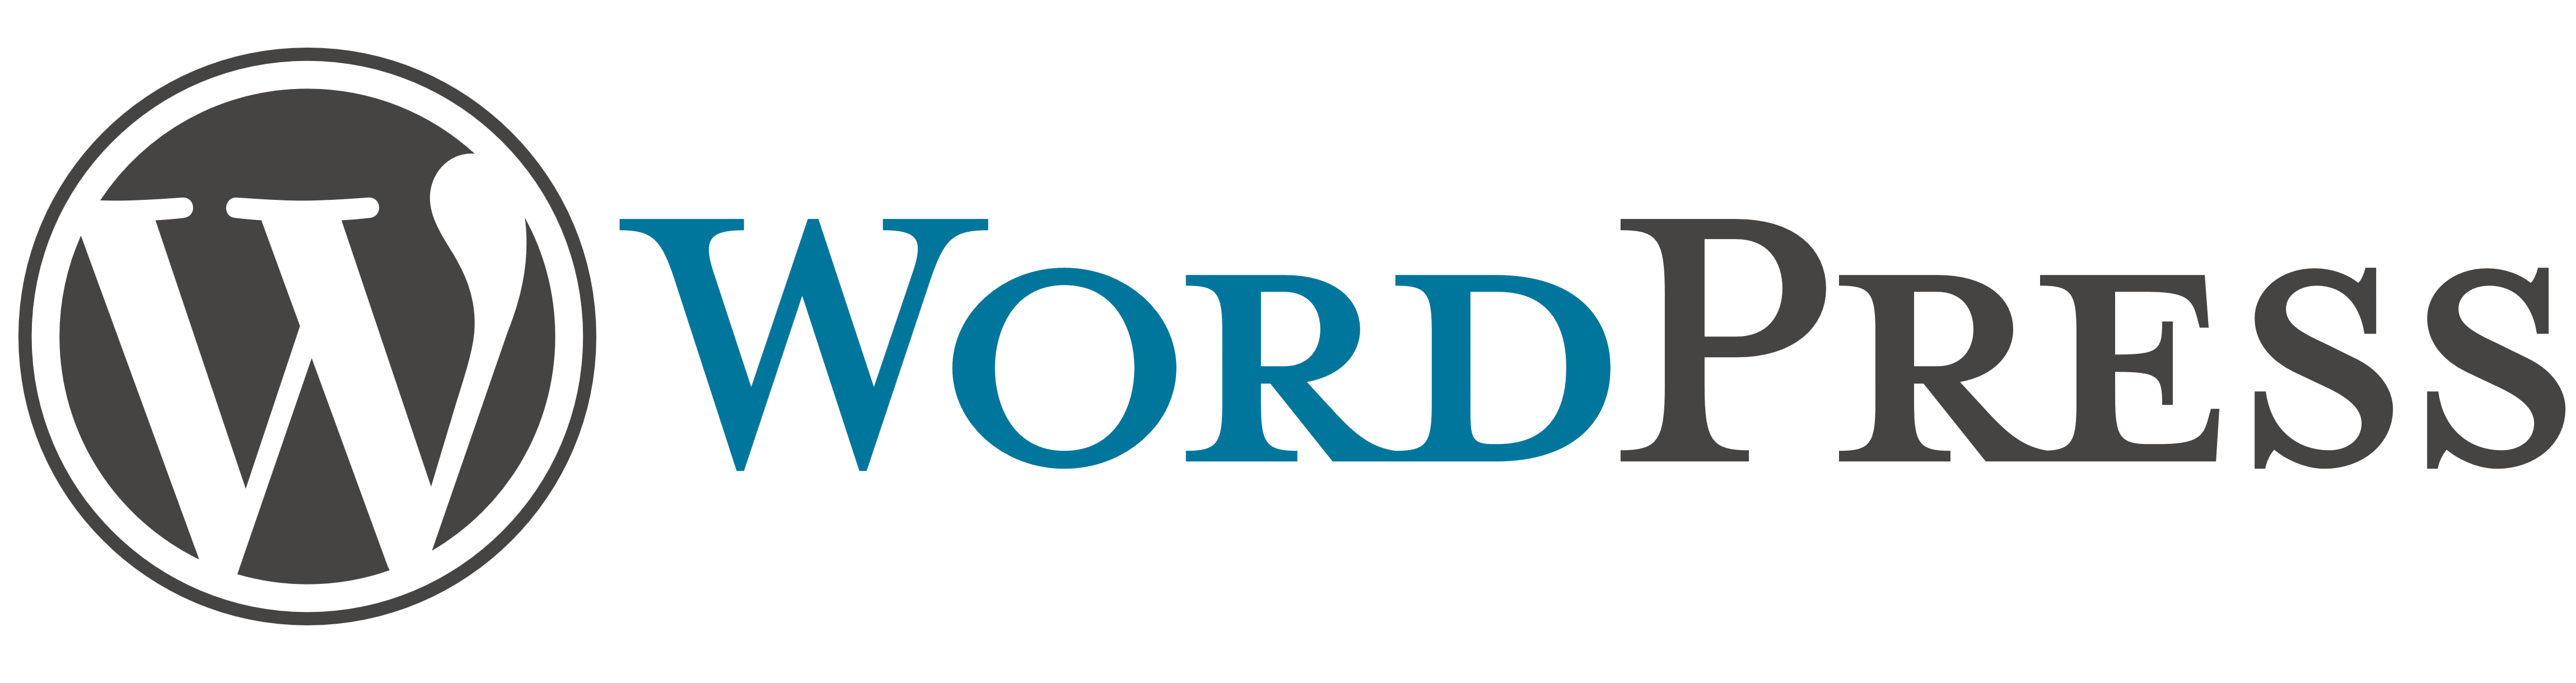 WordPress logo, logotype